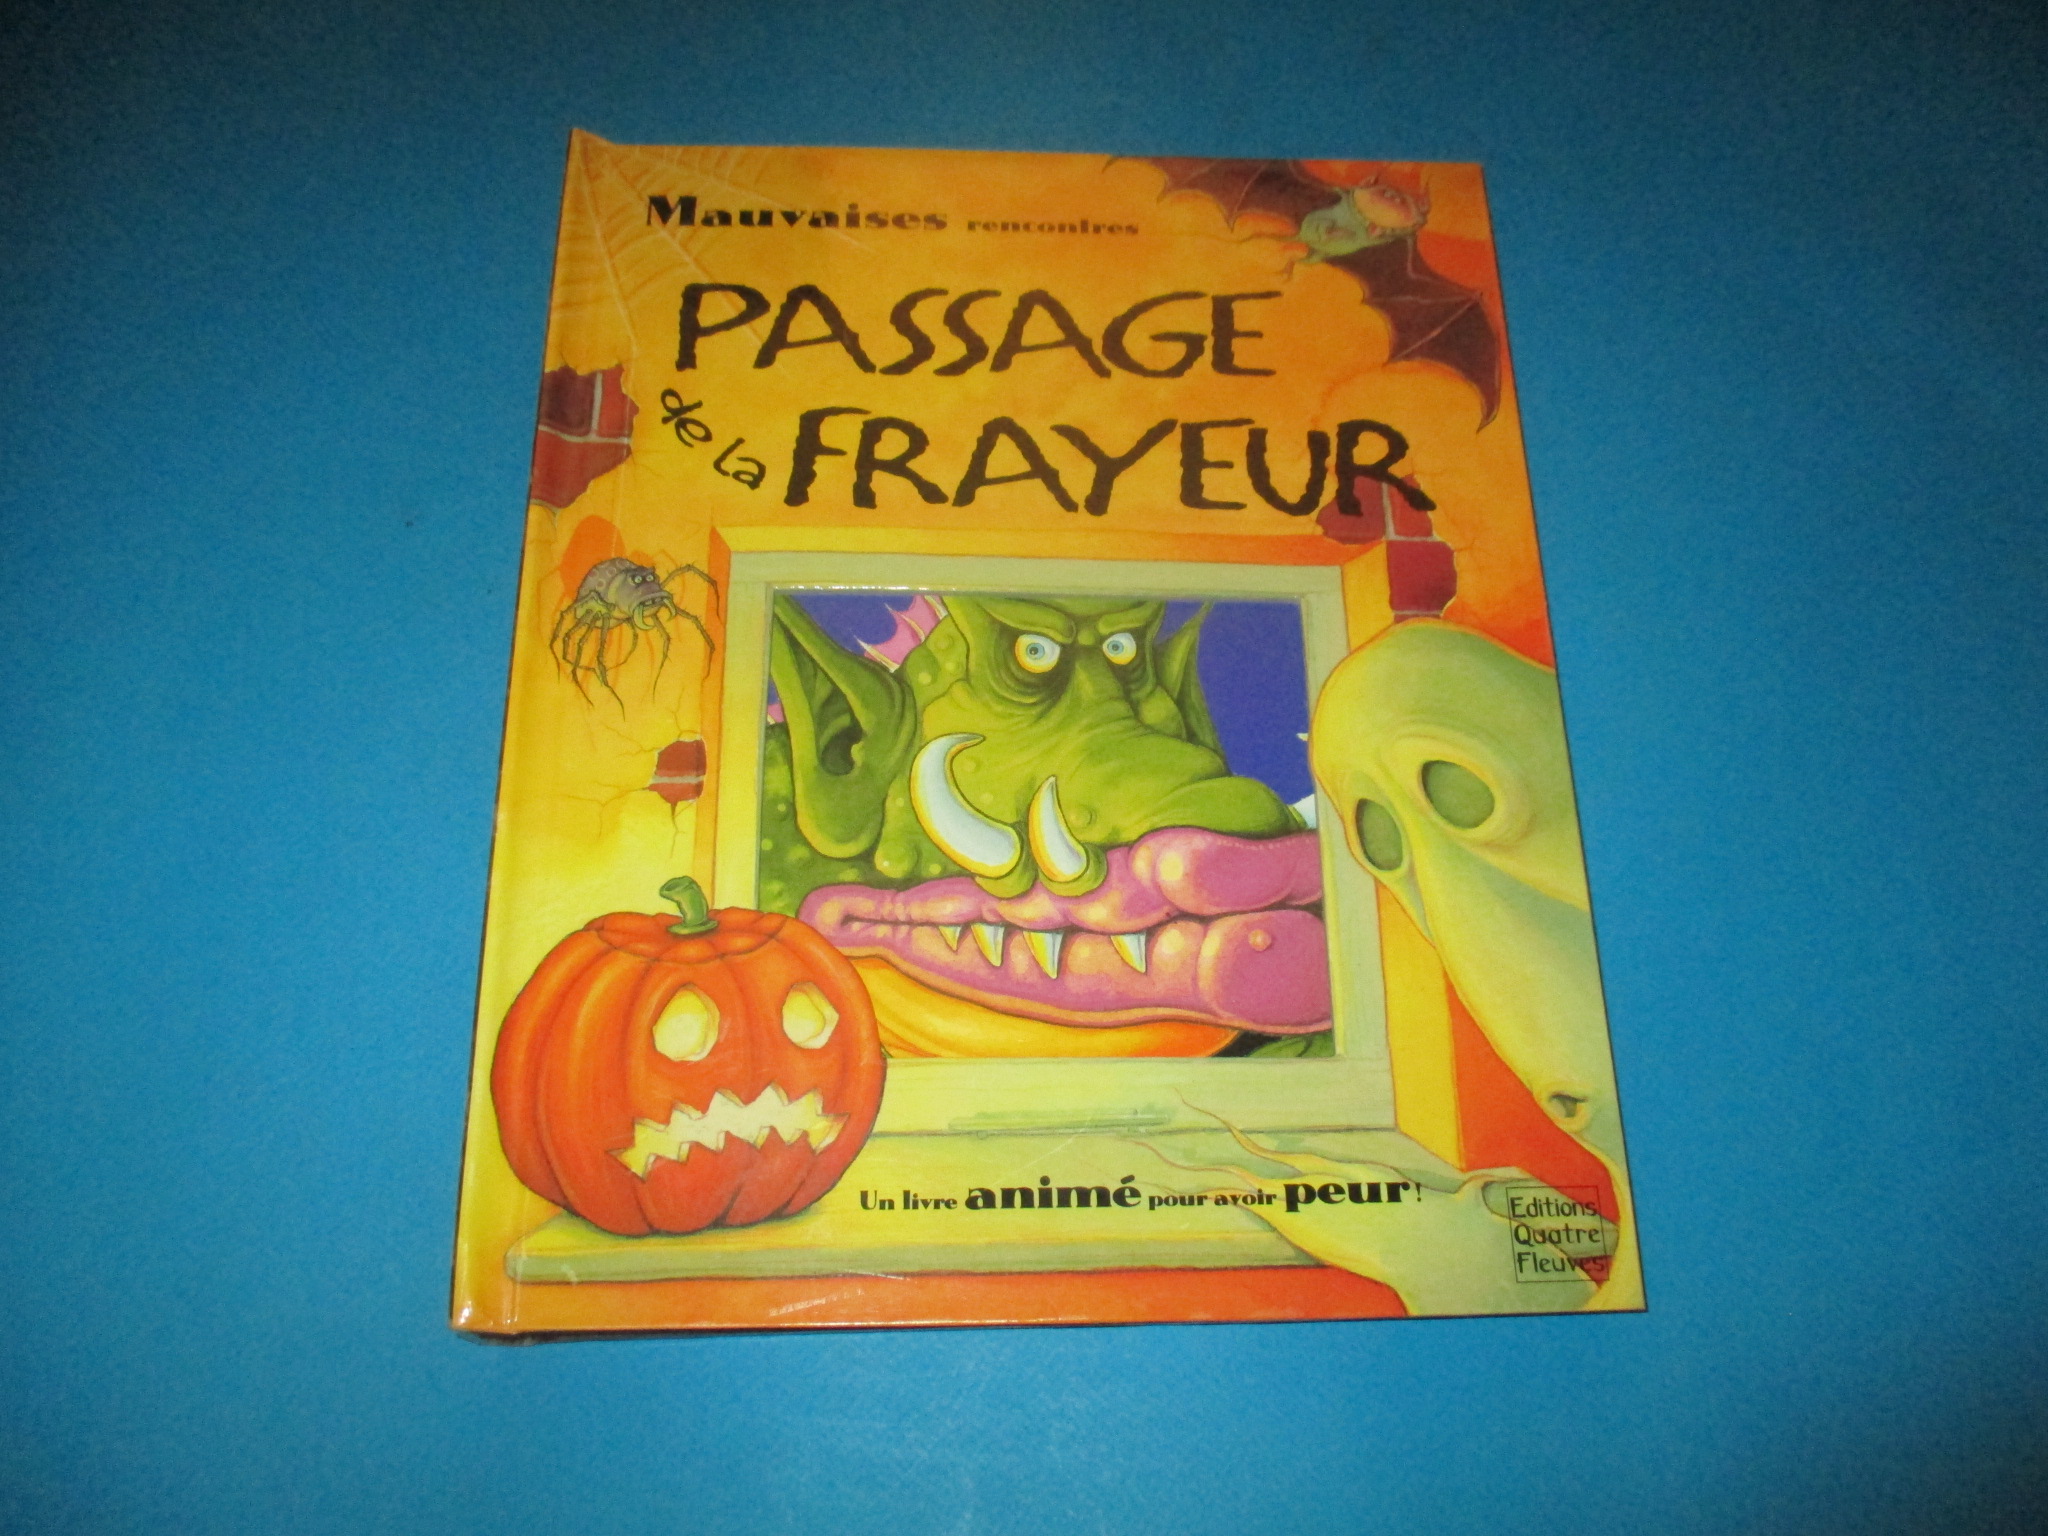 Livre animé pop-up Passage de la Frayeur, Mauvaises rencontres, un livre animé pour avoir peur, Quatre Fleuves